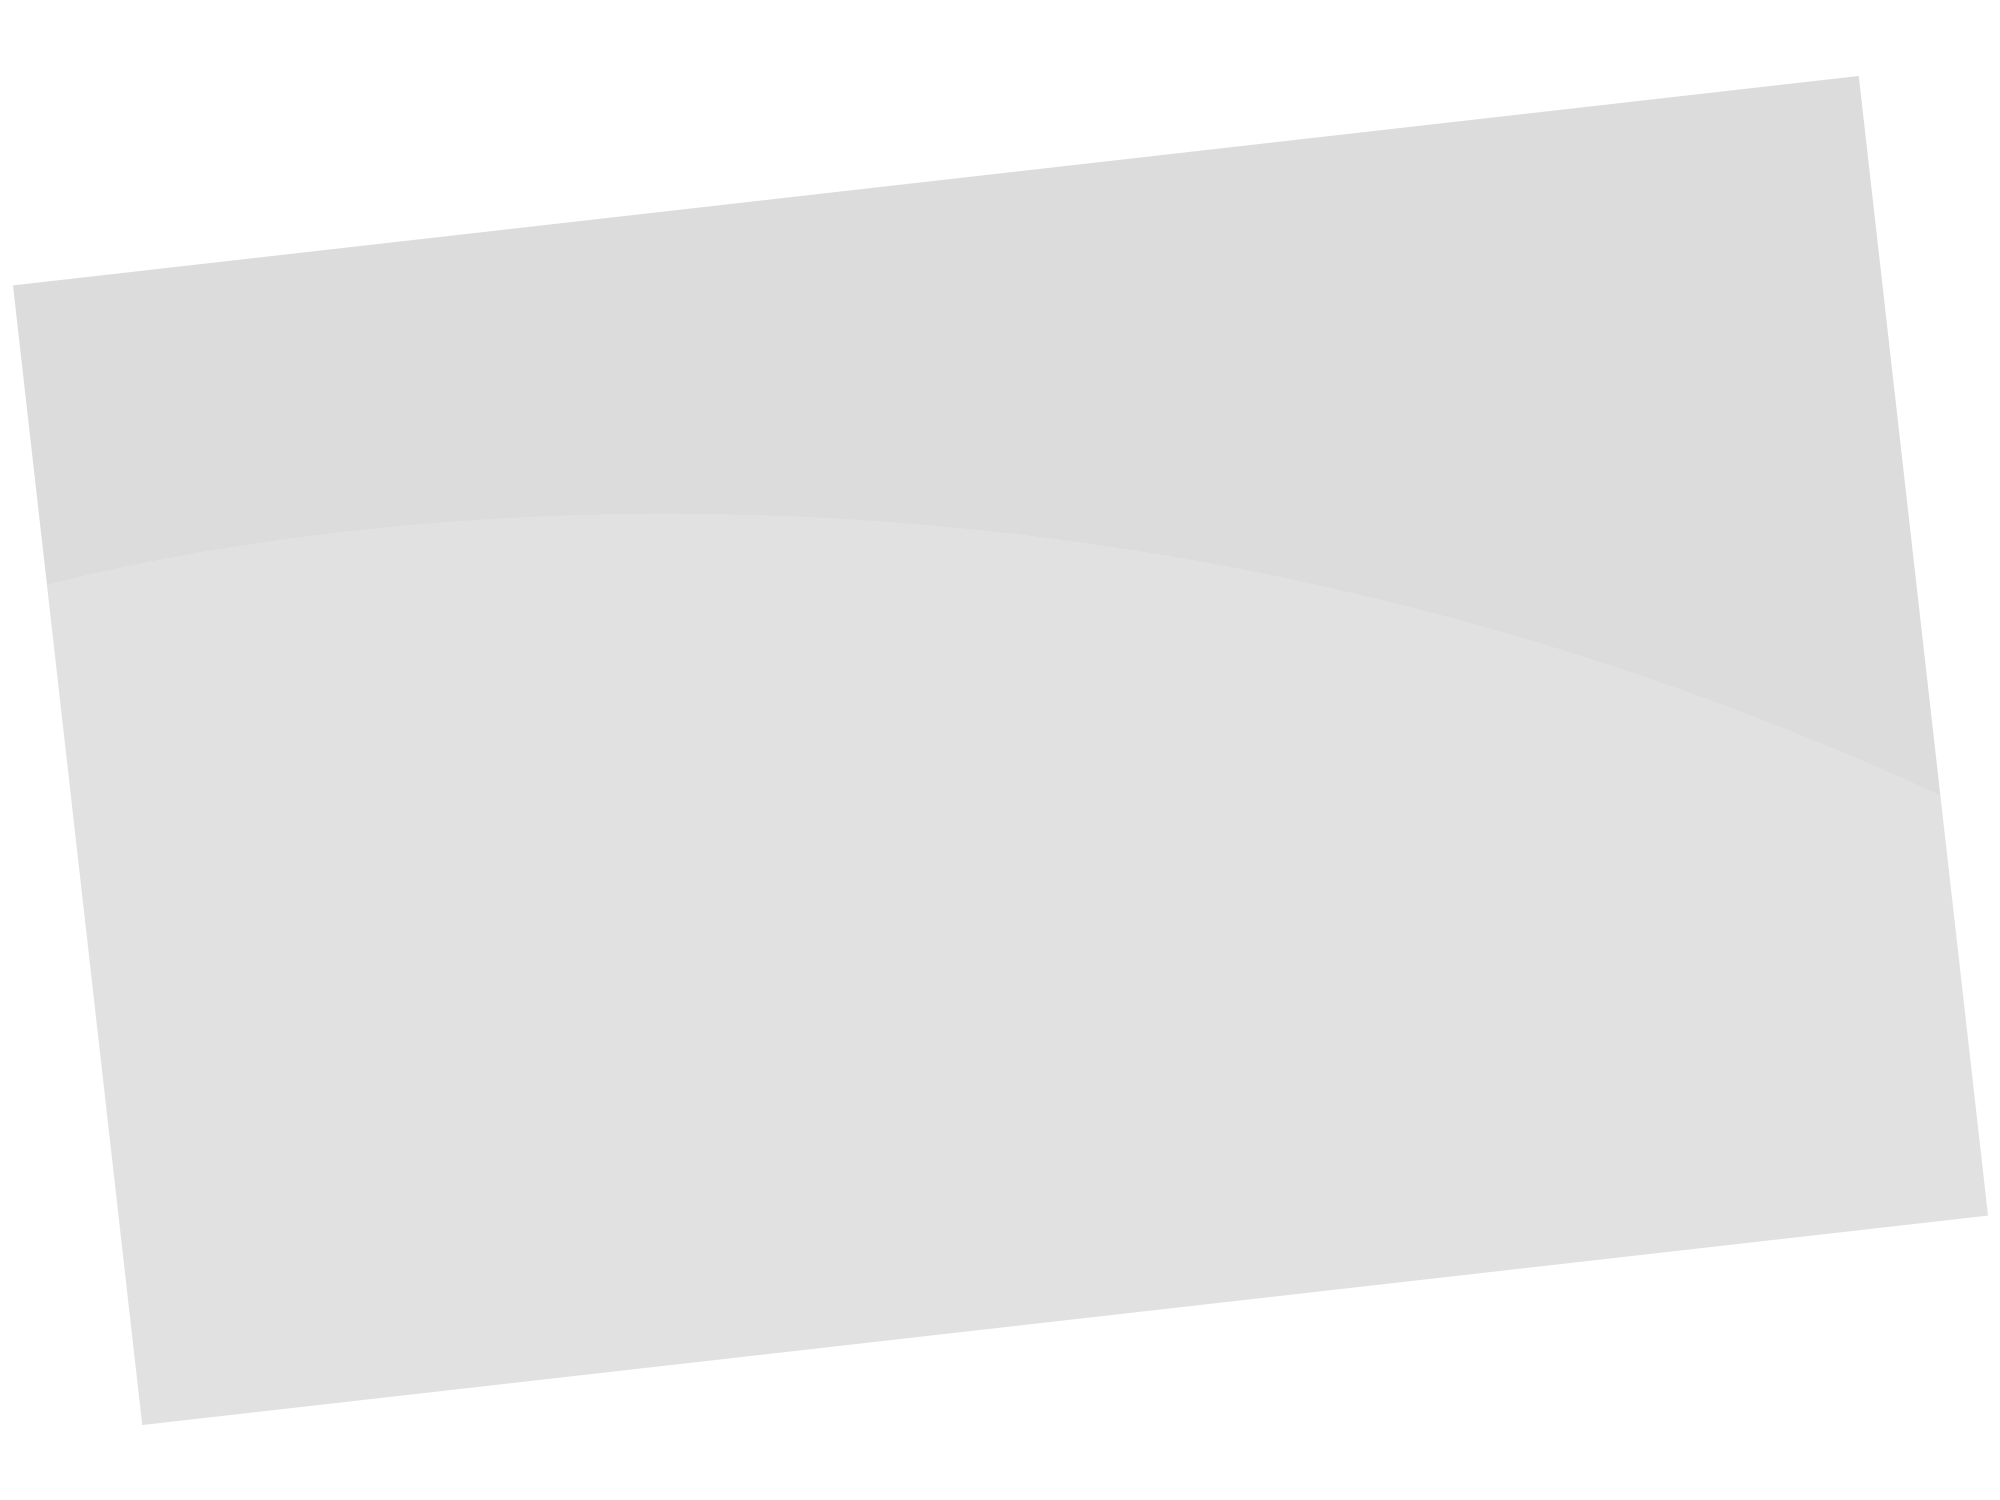 Image de rectangle gris avec une ombre foncée inspirée du logo de l'entreprise de peinture EURL Henriet Daniel à Besançon et en France Comté